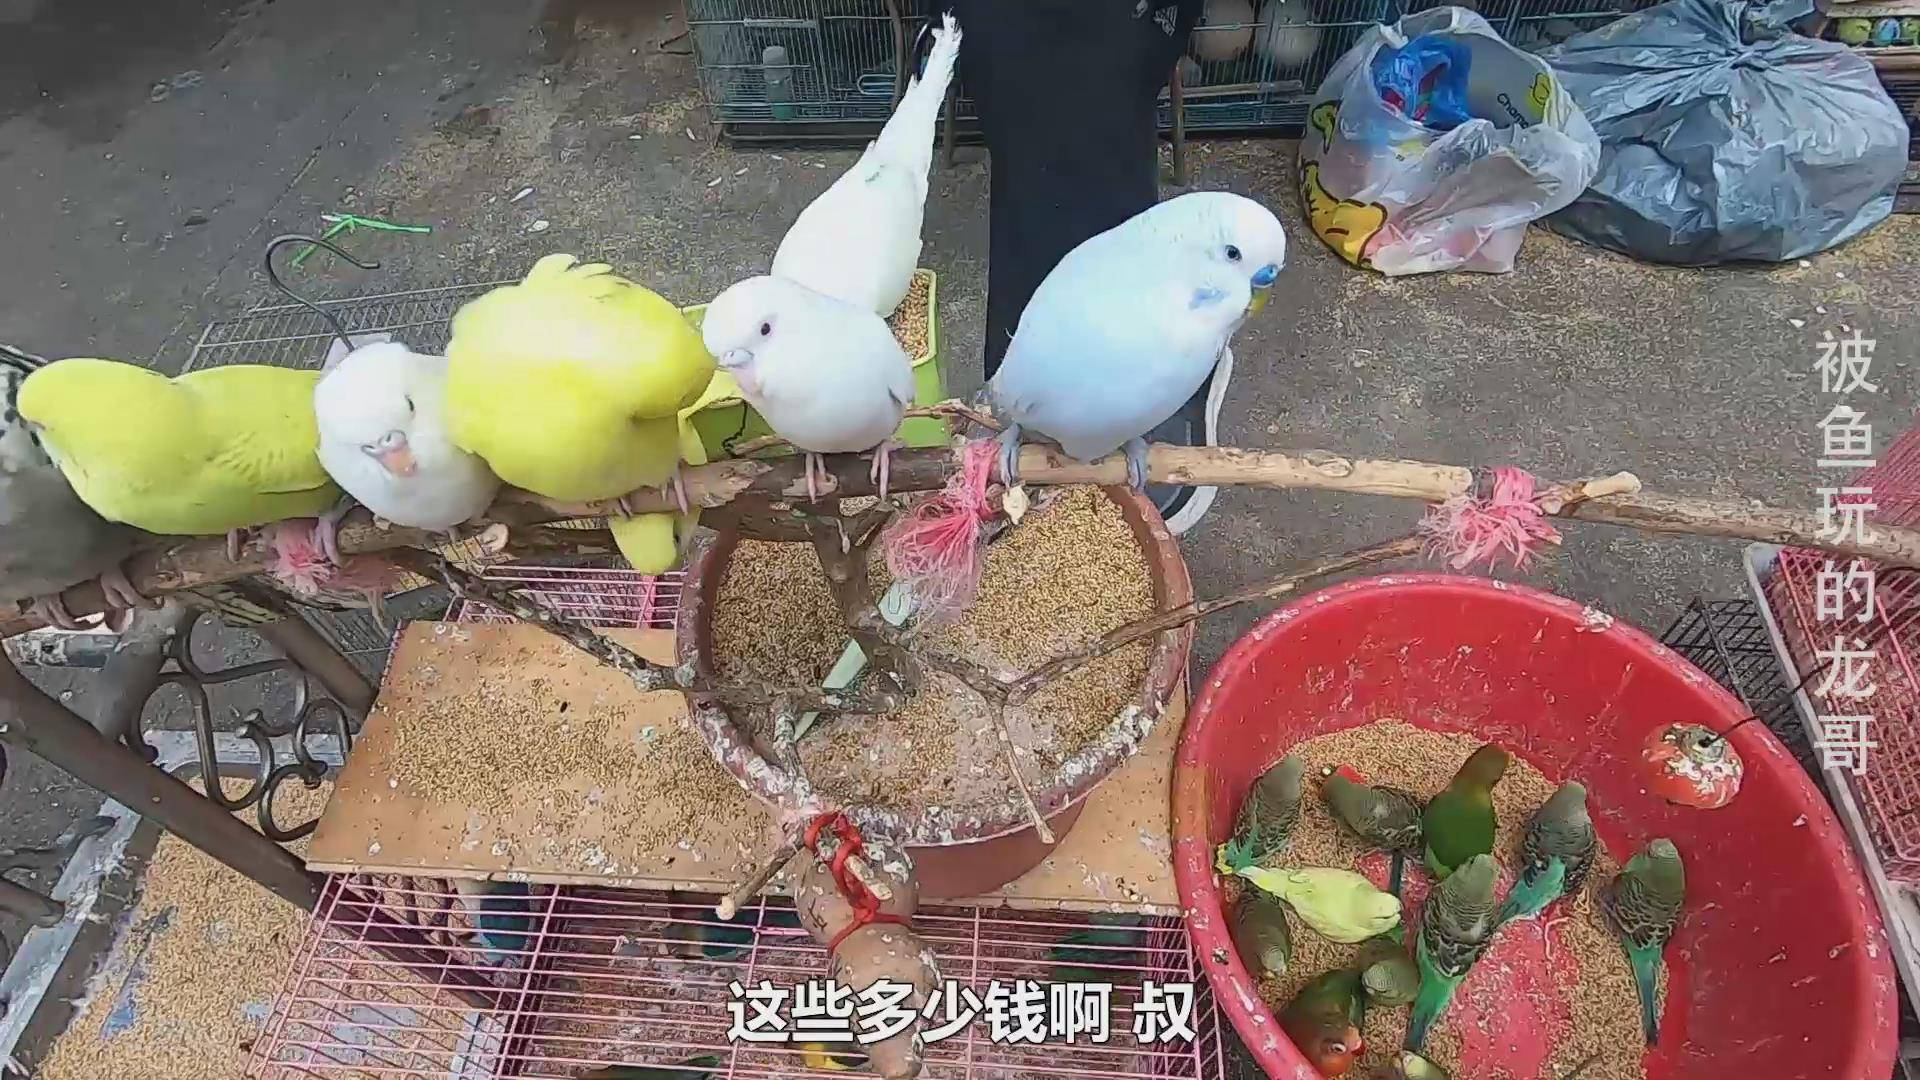 广州花鸟市场,大叔卖的鹦鹉鸟30一只,一排站着不会飞走呢?